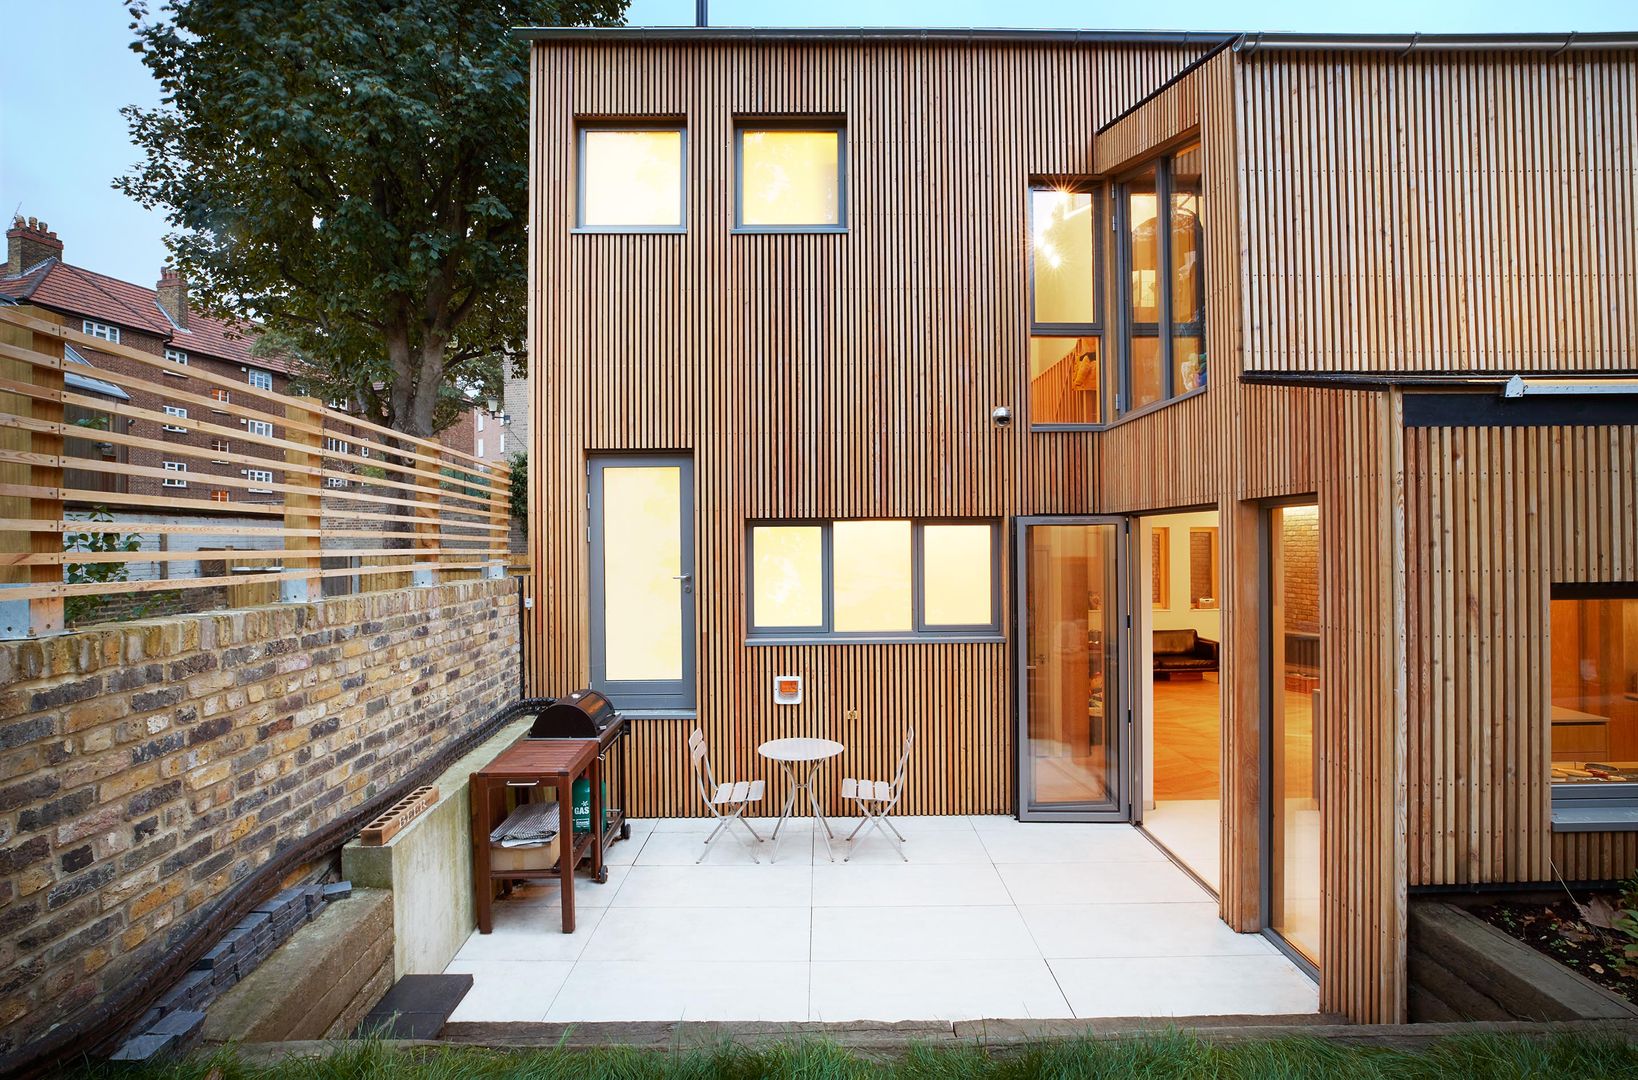 Private Residence - Scoble Place, London Designcubed Moderne balkons, veranda's en terrassen wood exterior,patio